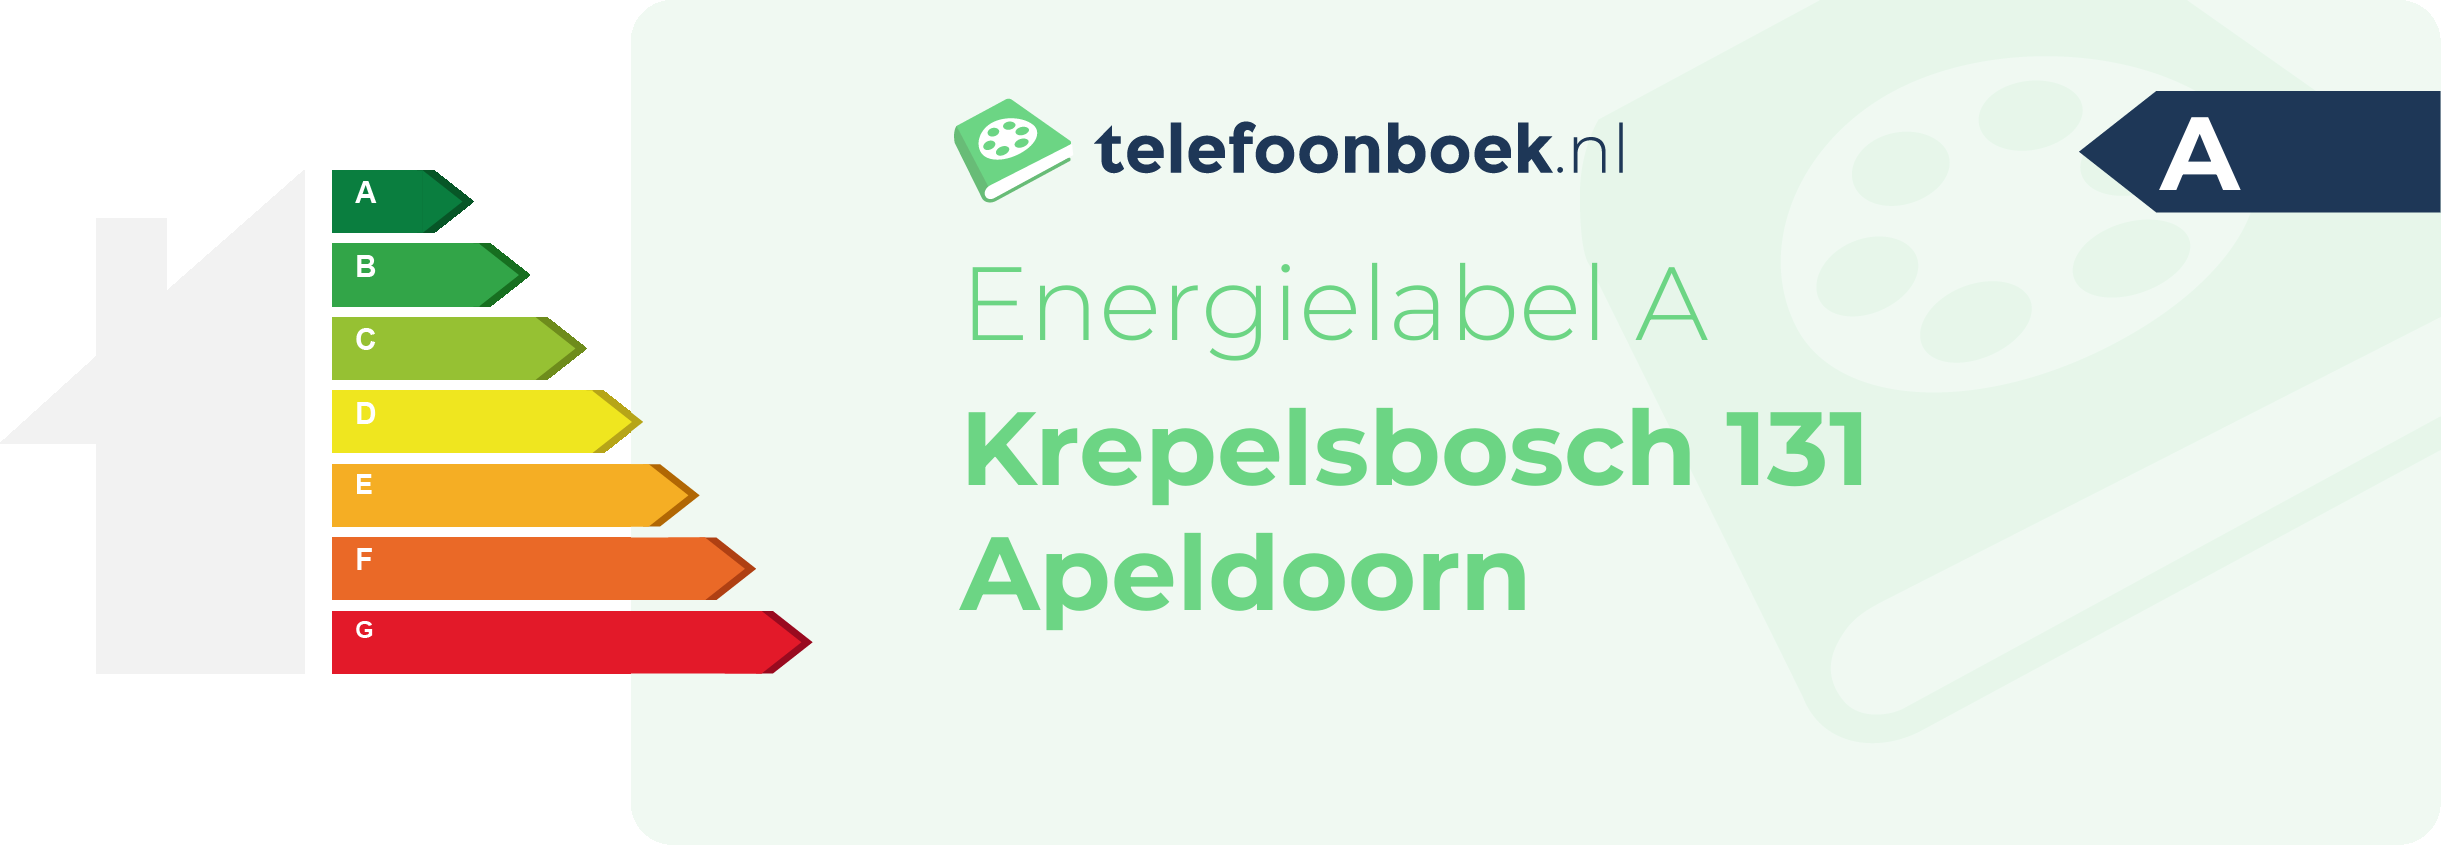 Energielabel Krepelsbosch 131 Apeldoorn